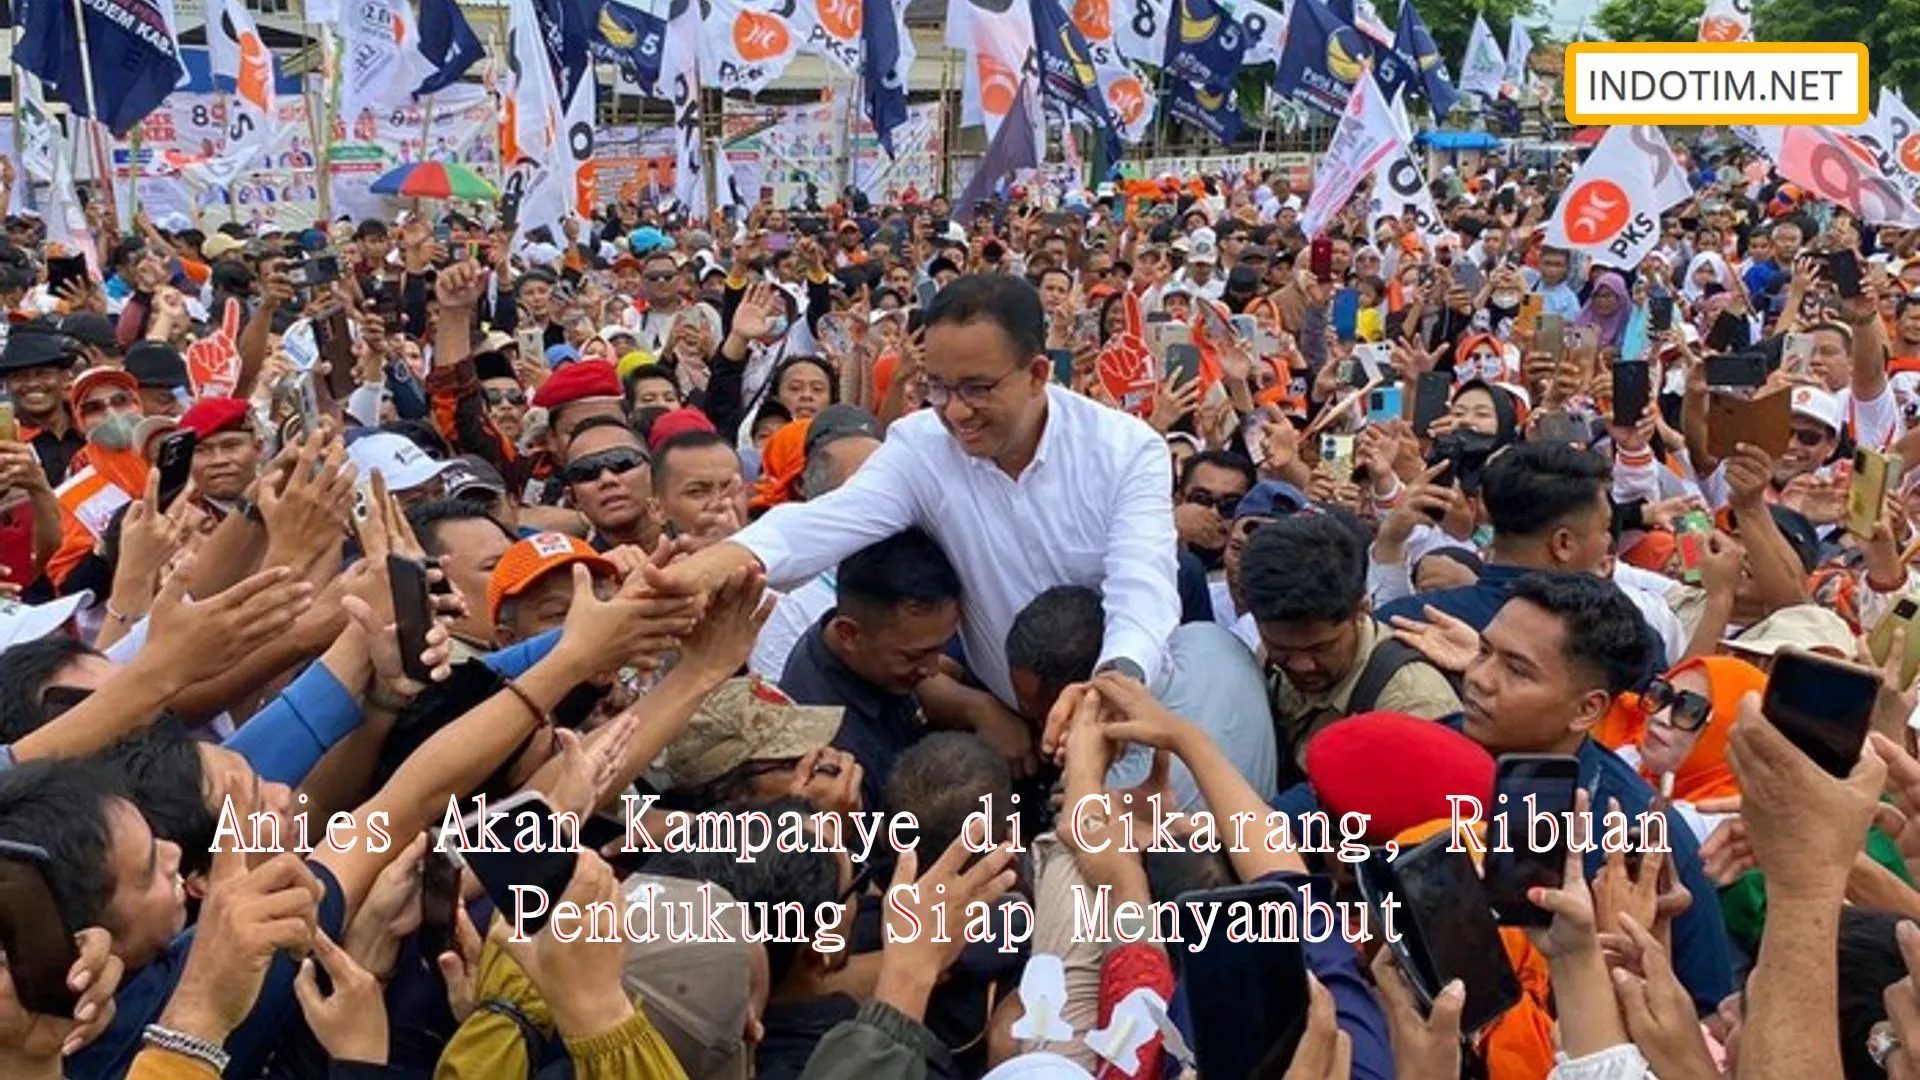 Anies Akan Kampanye di Cikarang, Ribuan Pendukung Siap Menyambut